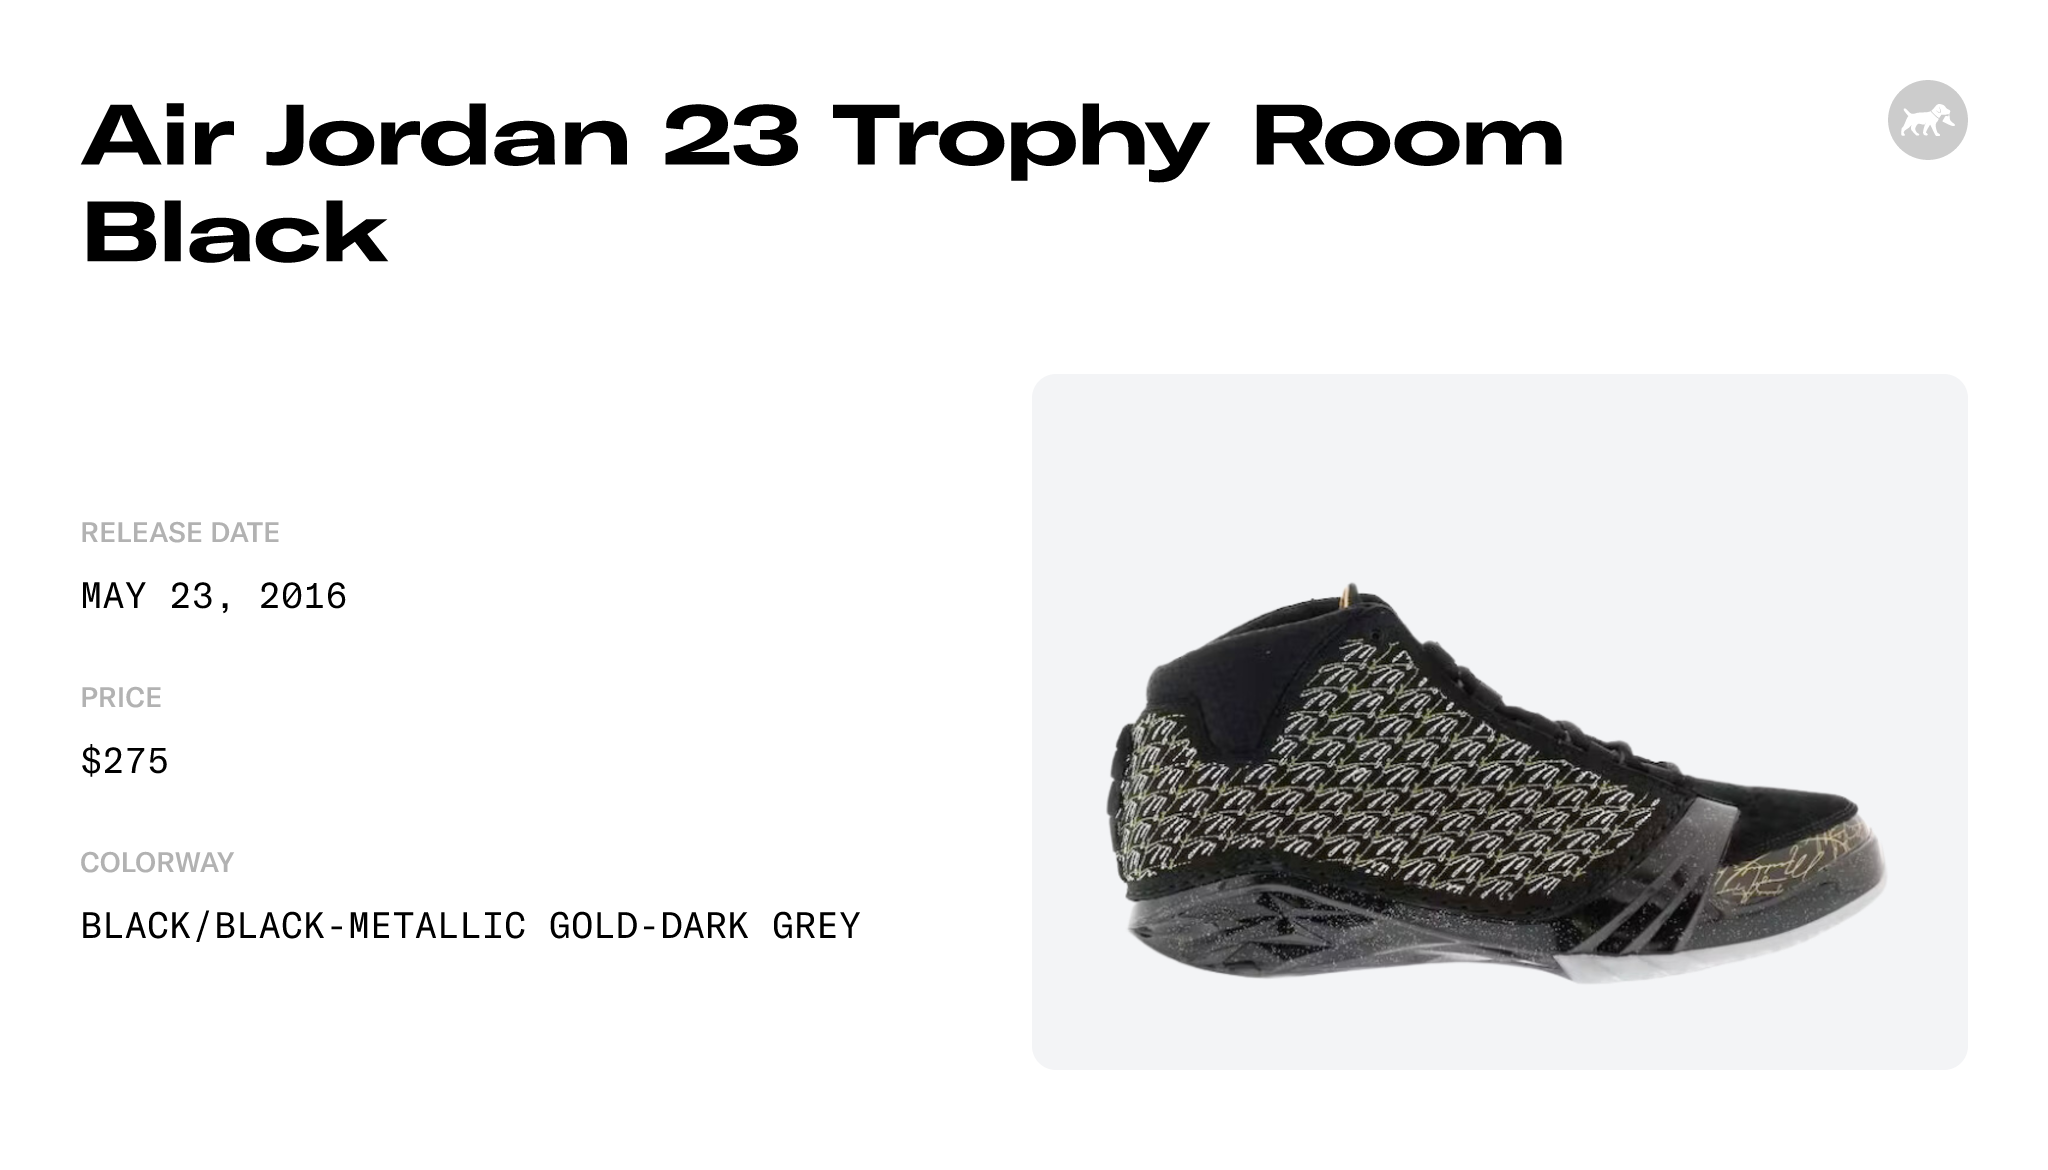 Air Jordan 23 Trophy Room Black - 853336-023 Raffles and Release Date